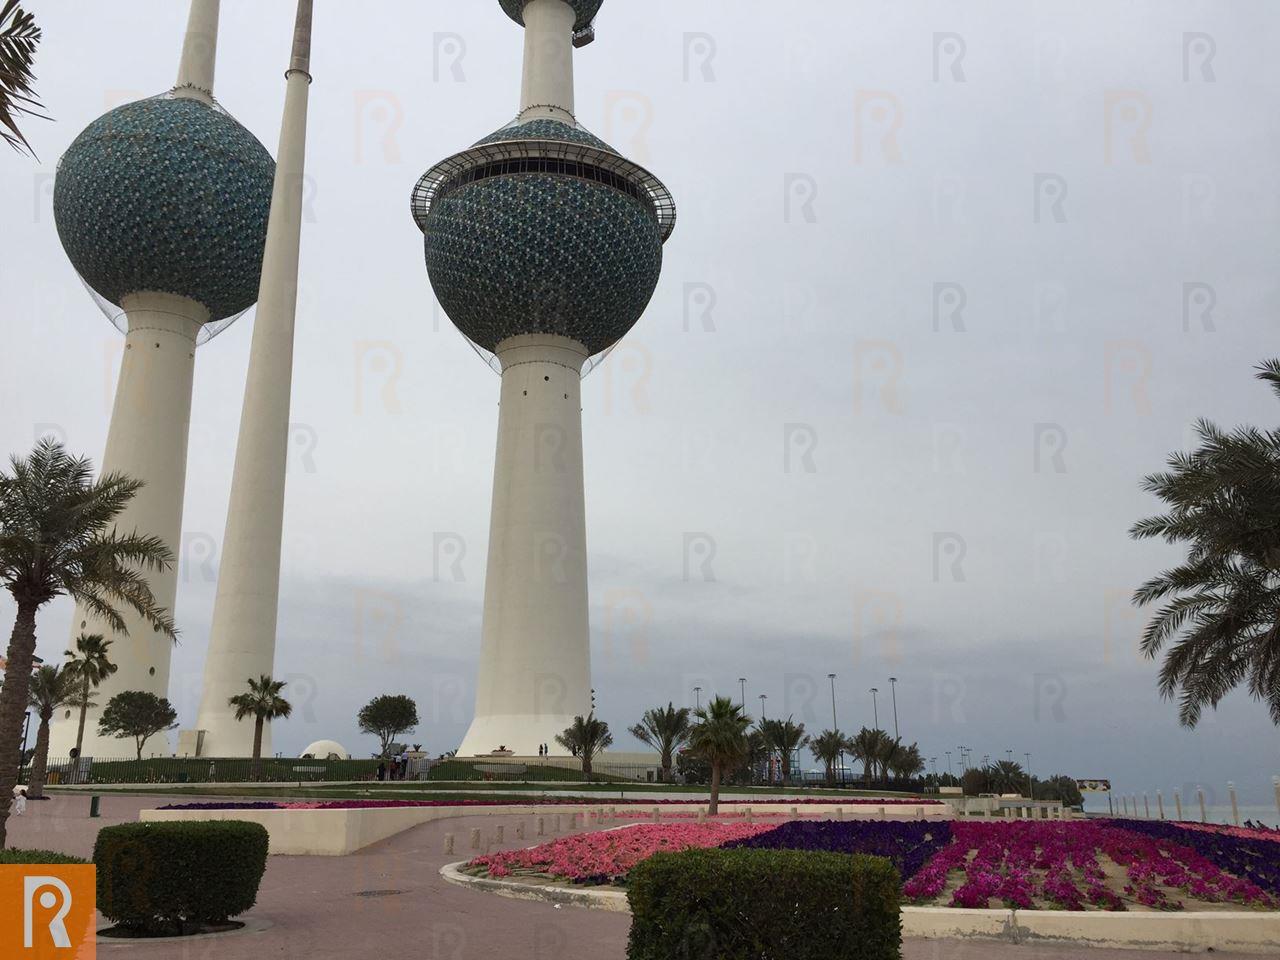 أوقات عمل وسعر تذكرة الدخول الى أبراج الكويت بعد افتتاحها